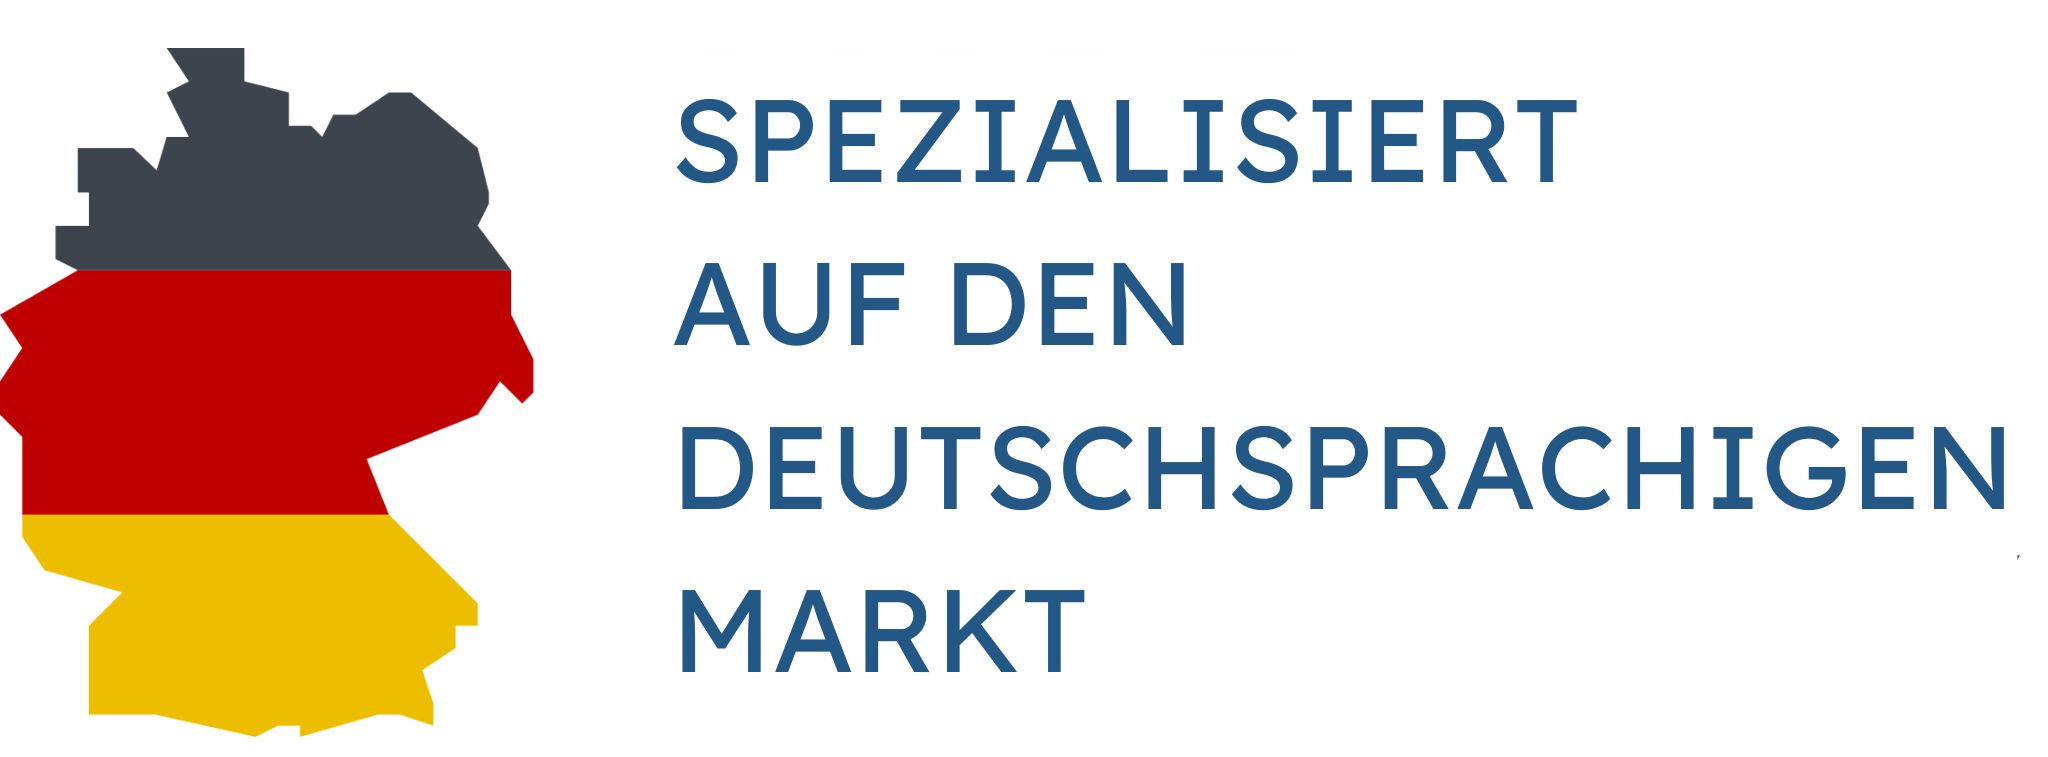 Spezialisiert auf den deutschsprachigen Markt